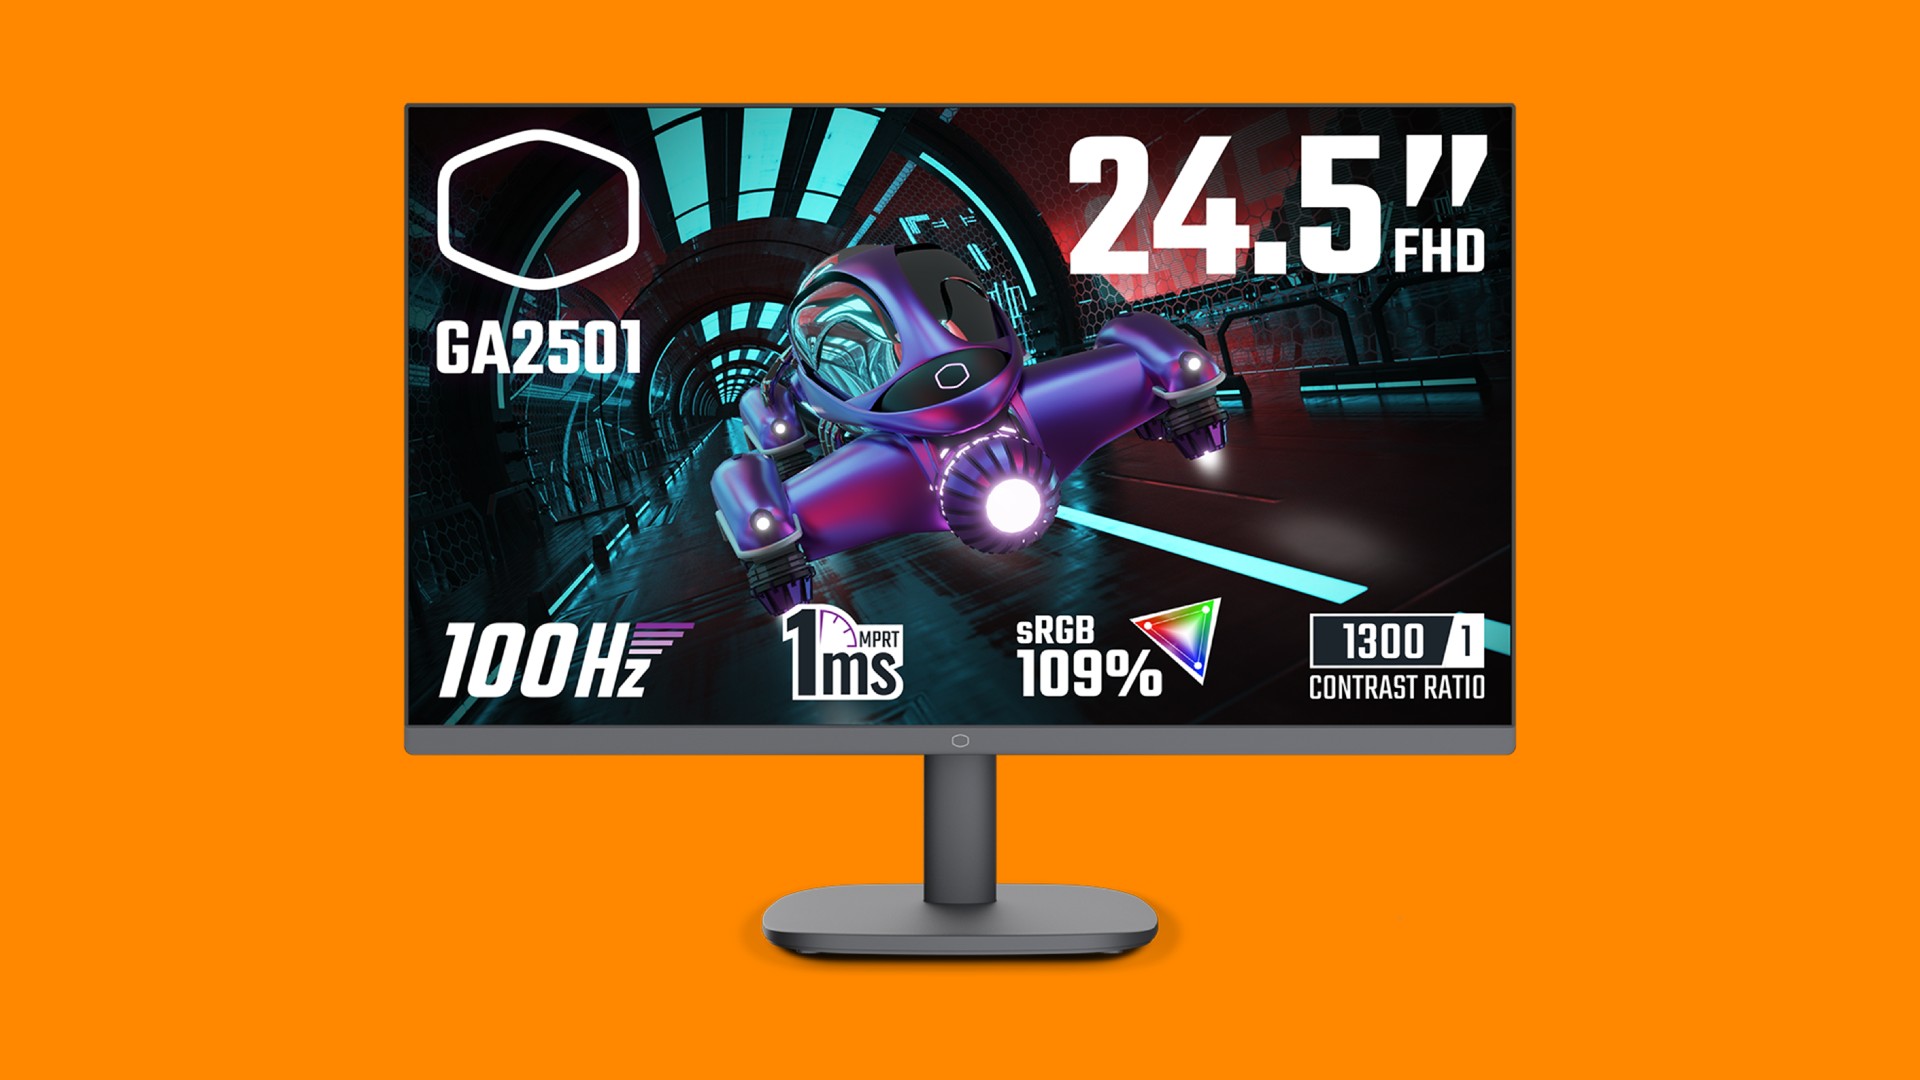 Nový herní monitor Cooler Master je ultra cenově dostupný a přesto dosahuje 100Hz.